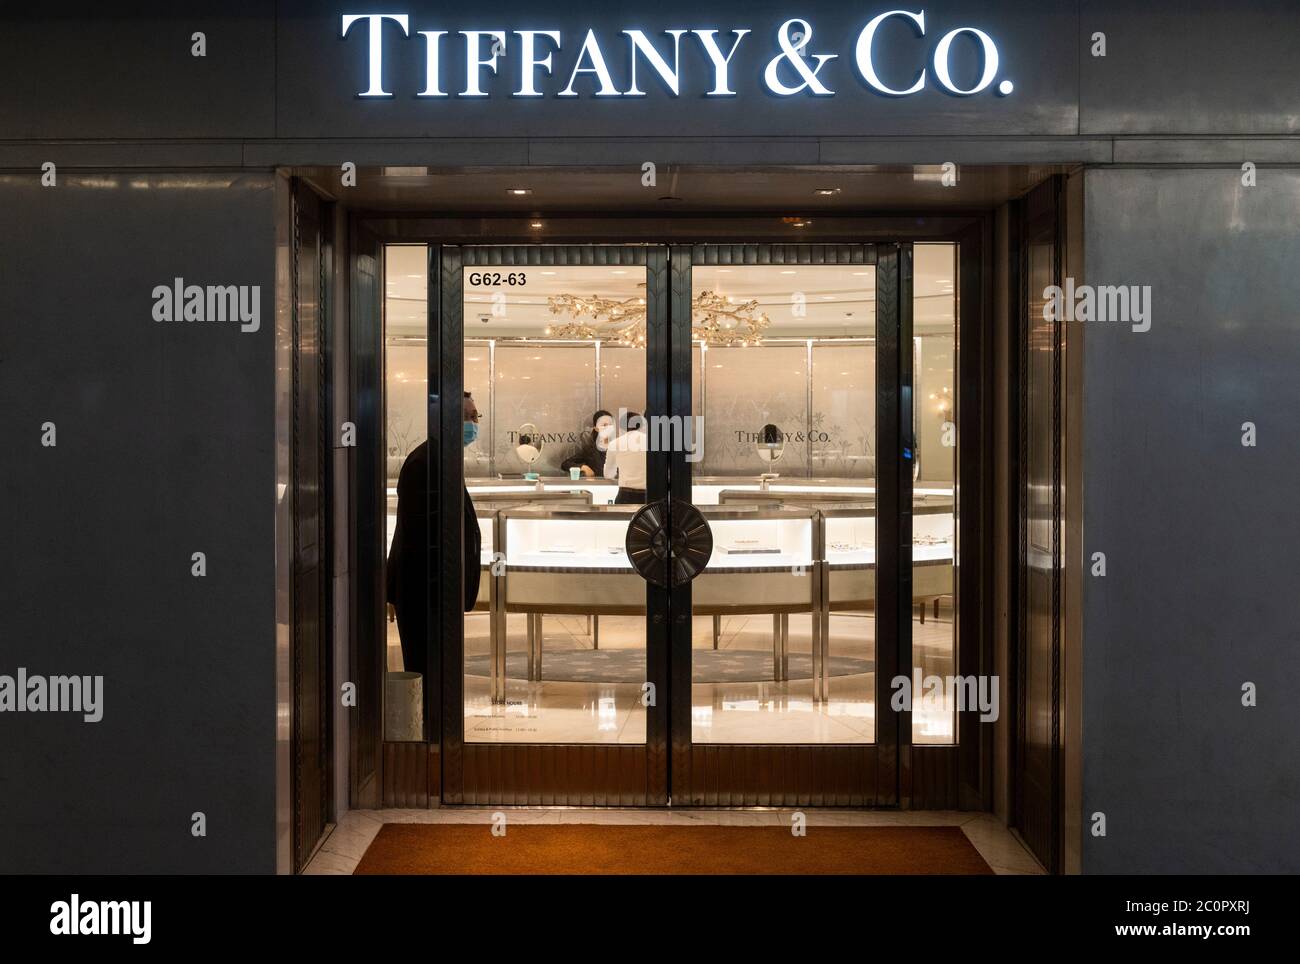 tiffany company store